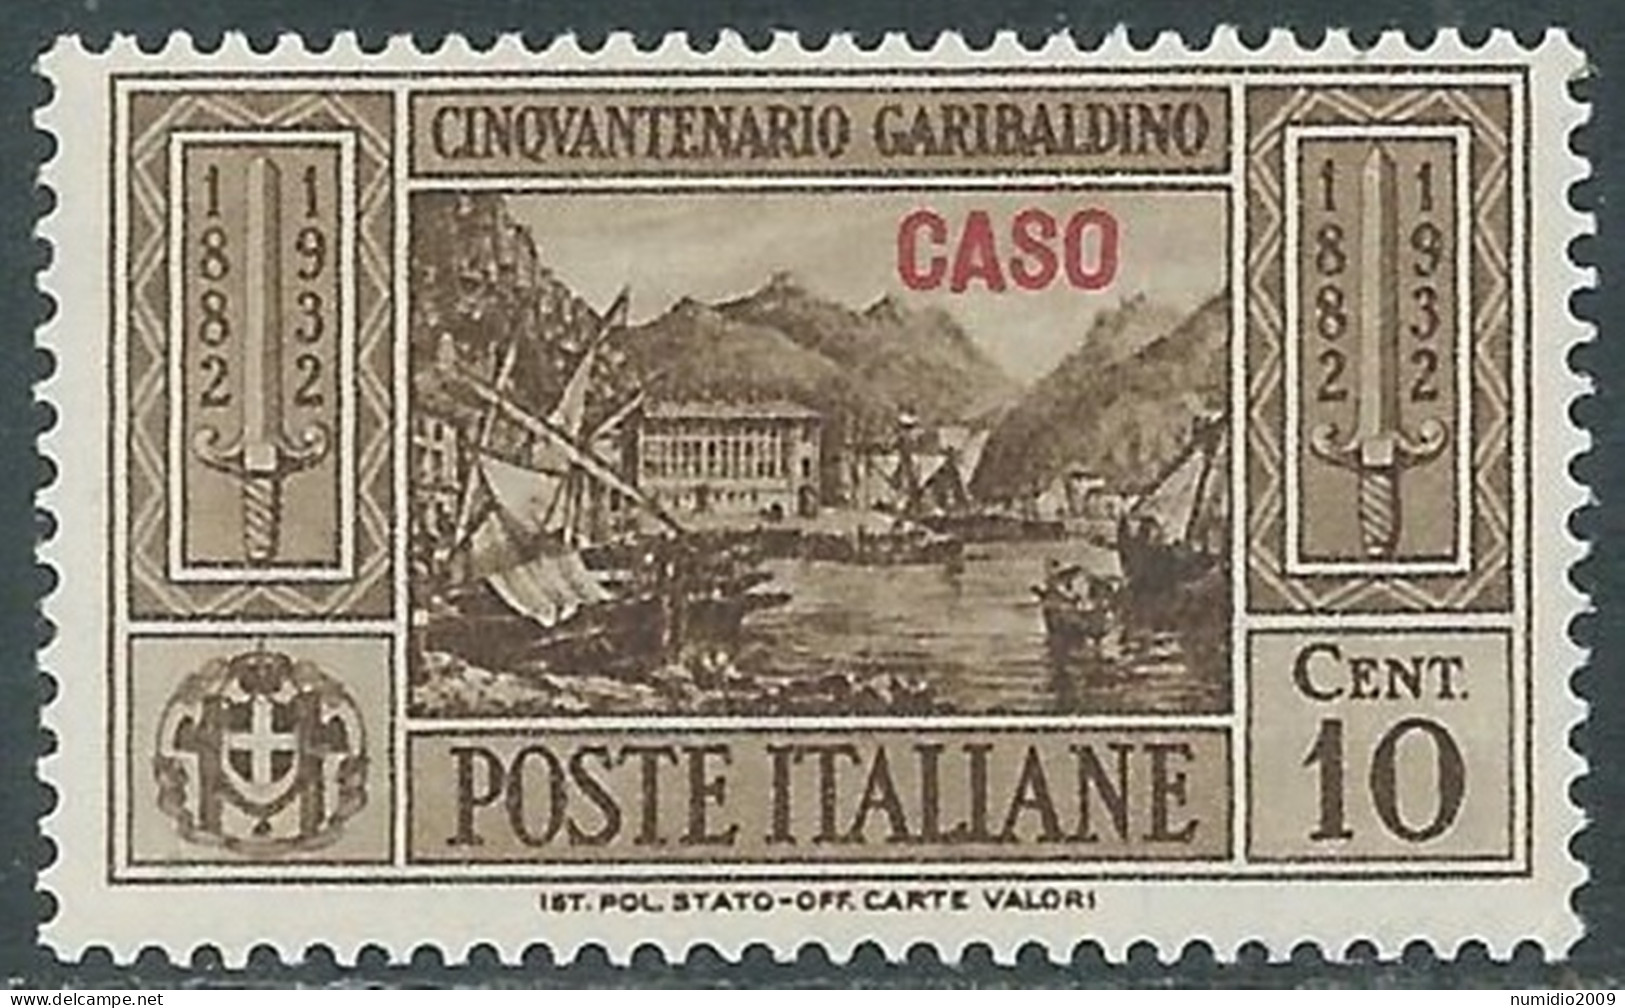 1932 EGEO CASO GARIBALDI 10 CENT MNH ** - I45-7 - Aegean (Caso)